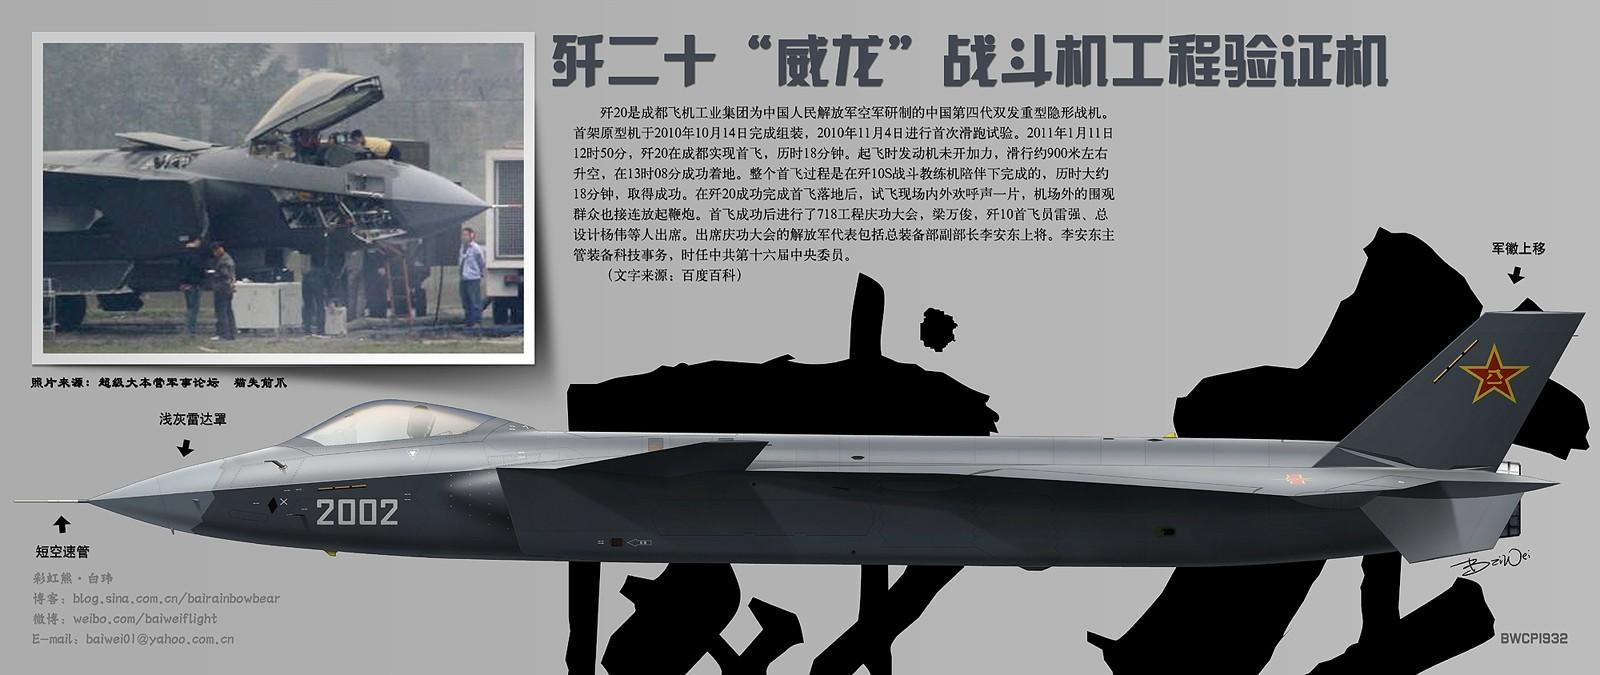 研制的中国第四代(欧美标准,俄罗斯标准为第五代)双发重型隐形战机